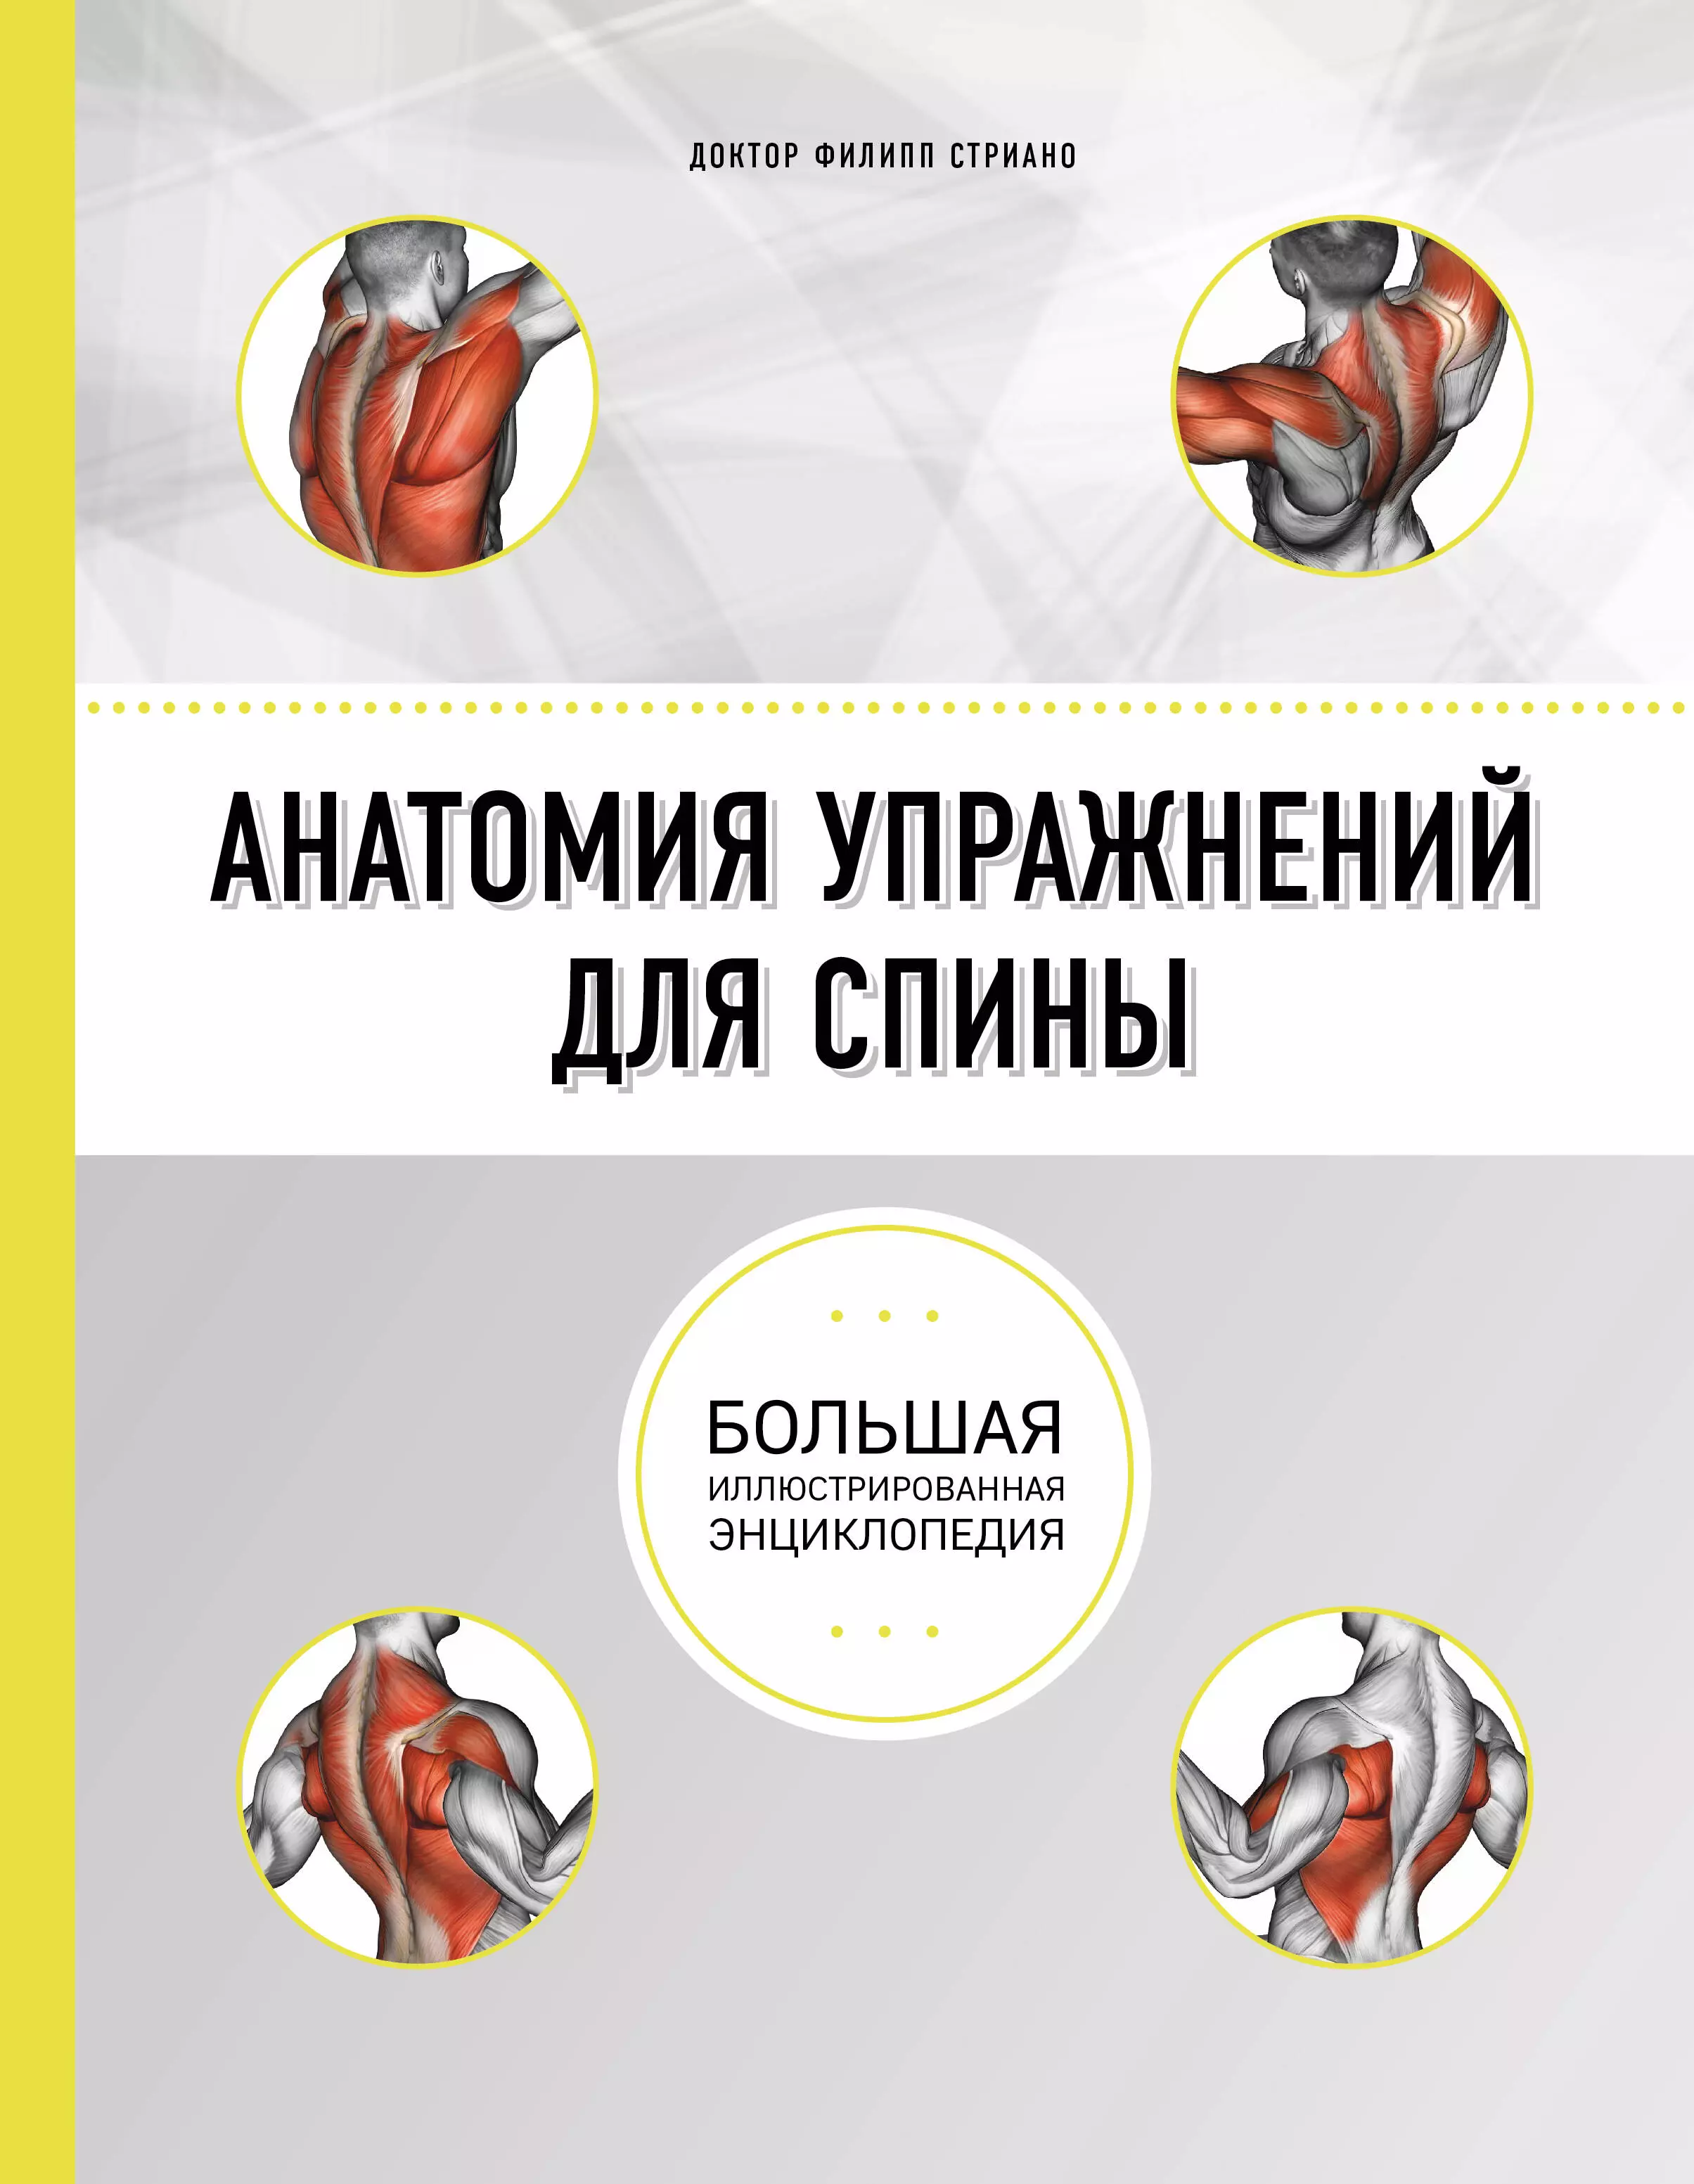 Стриано Филипп, Буслова Элеонова Эдуардовна - Анатомия упражнений для спины. 2-е издание